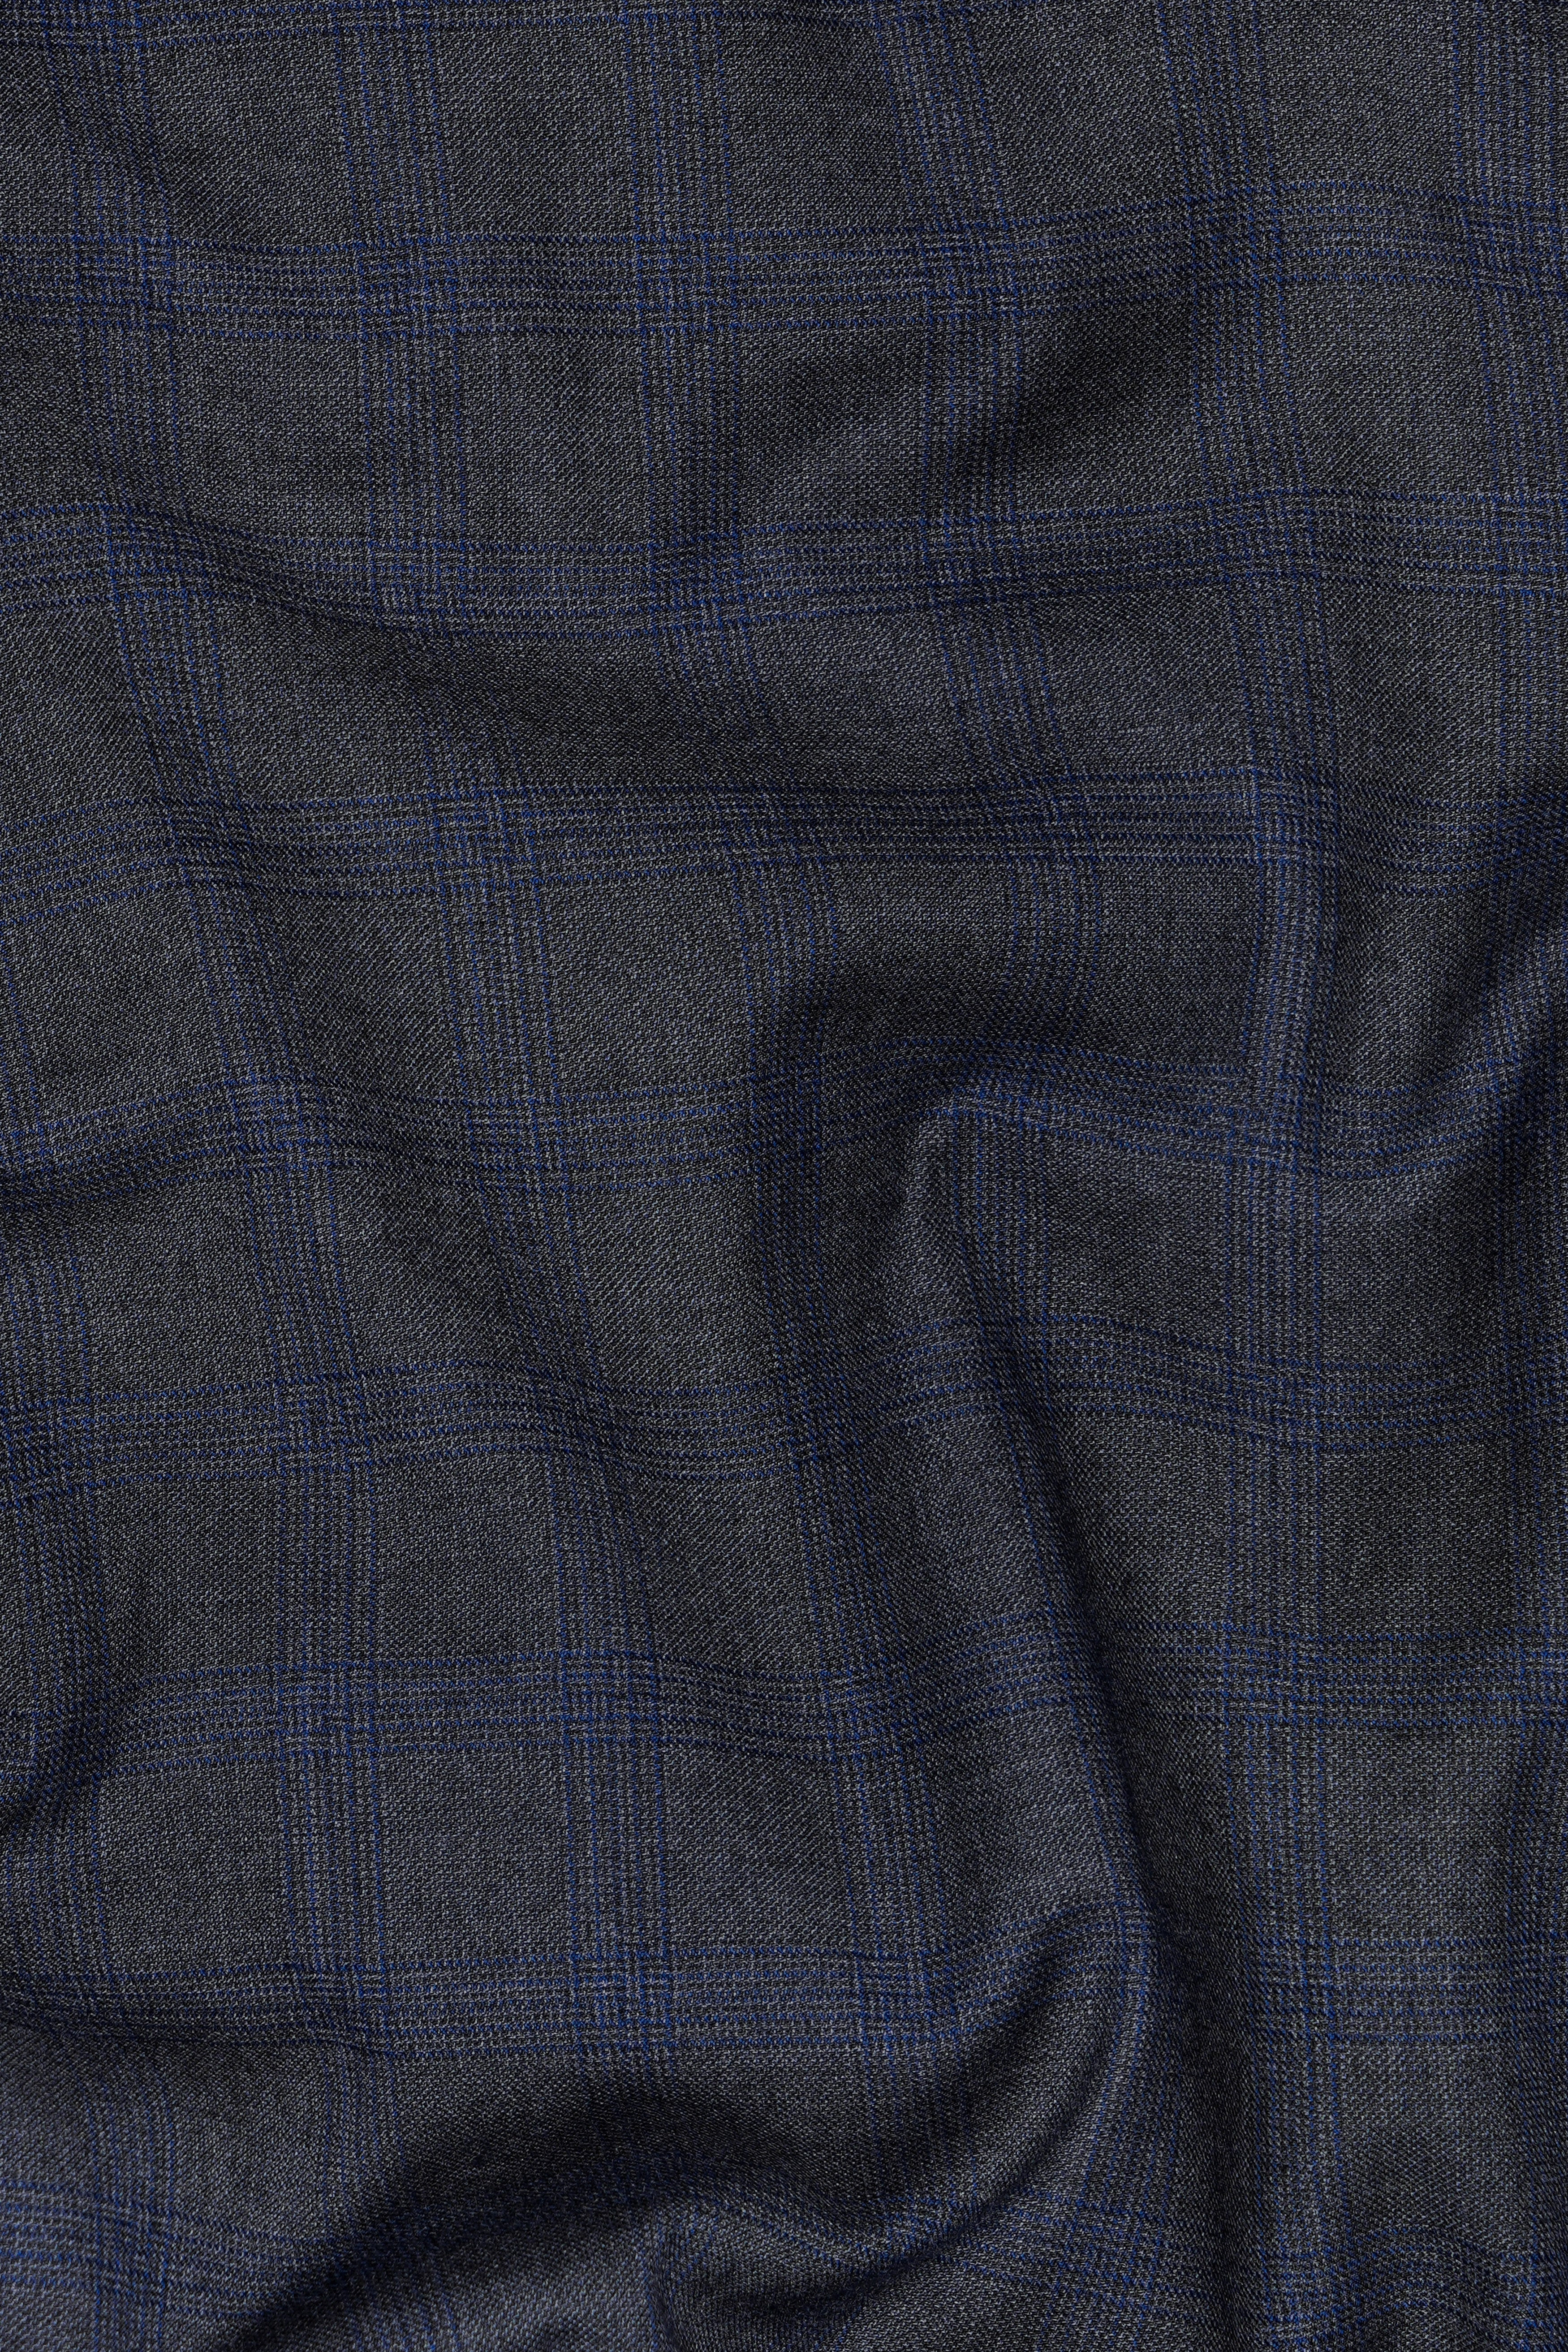 Capecod Gray and Delft Blue Subtle Checkered Wool Rich Suit ST2905-SB-36,ST2905-SB-38,ST2905-SB-40,ST2905-SB-42,ST2905-SB-44,ST2905-SB-46,ST2905-SB-48,ST2905-SB-50,ST2905-SB-52,ST2905-SB-54,ST2905-SB-56,ST2905-SB-58,ST2905-SB-60